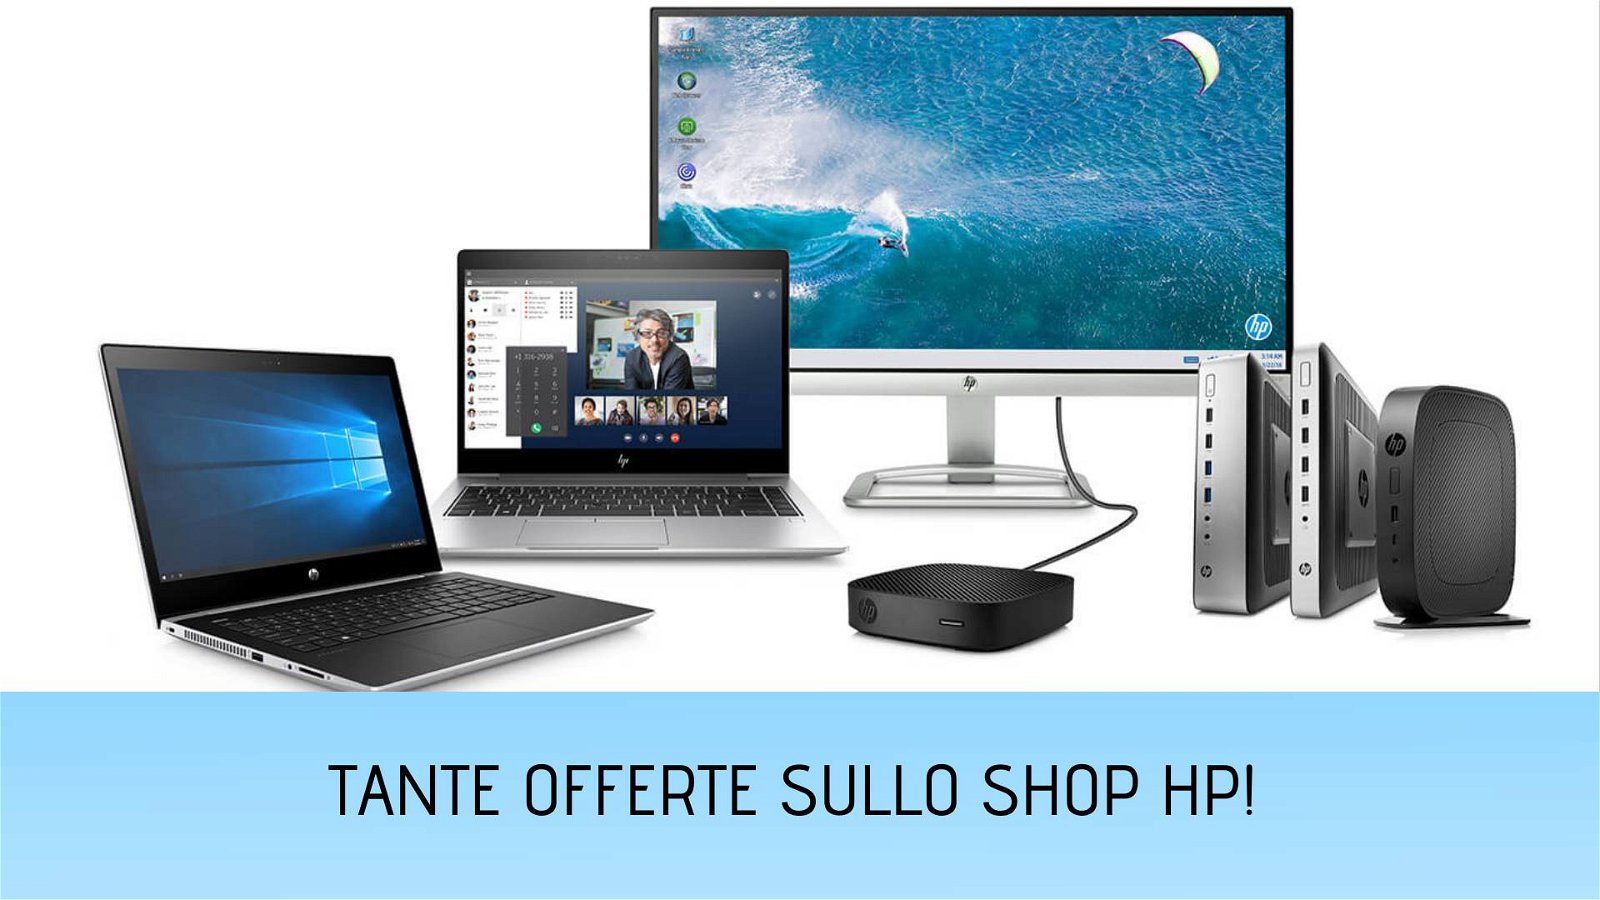 Immagine di Le offerte HP della settimana: sconti fino al 44% su portatili, monitor, stampanti e accessori